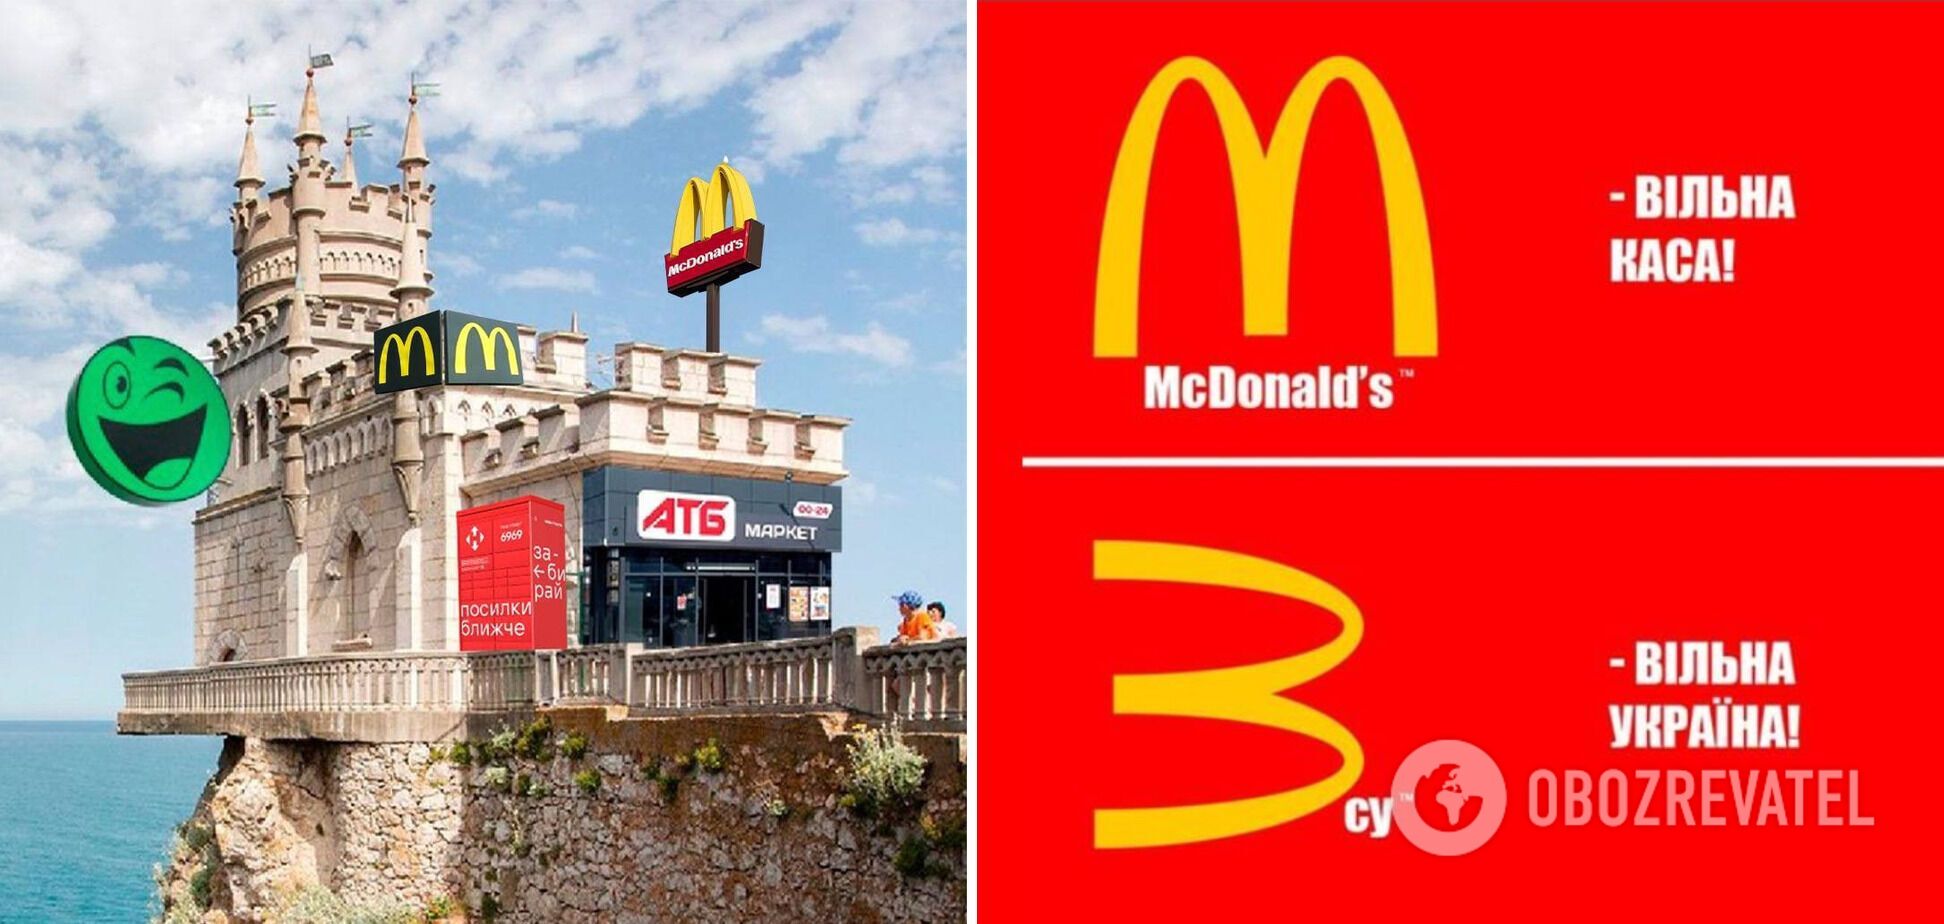 Украинцы отреагировали мемами и шутками на возвращение McDonald's